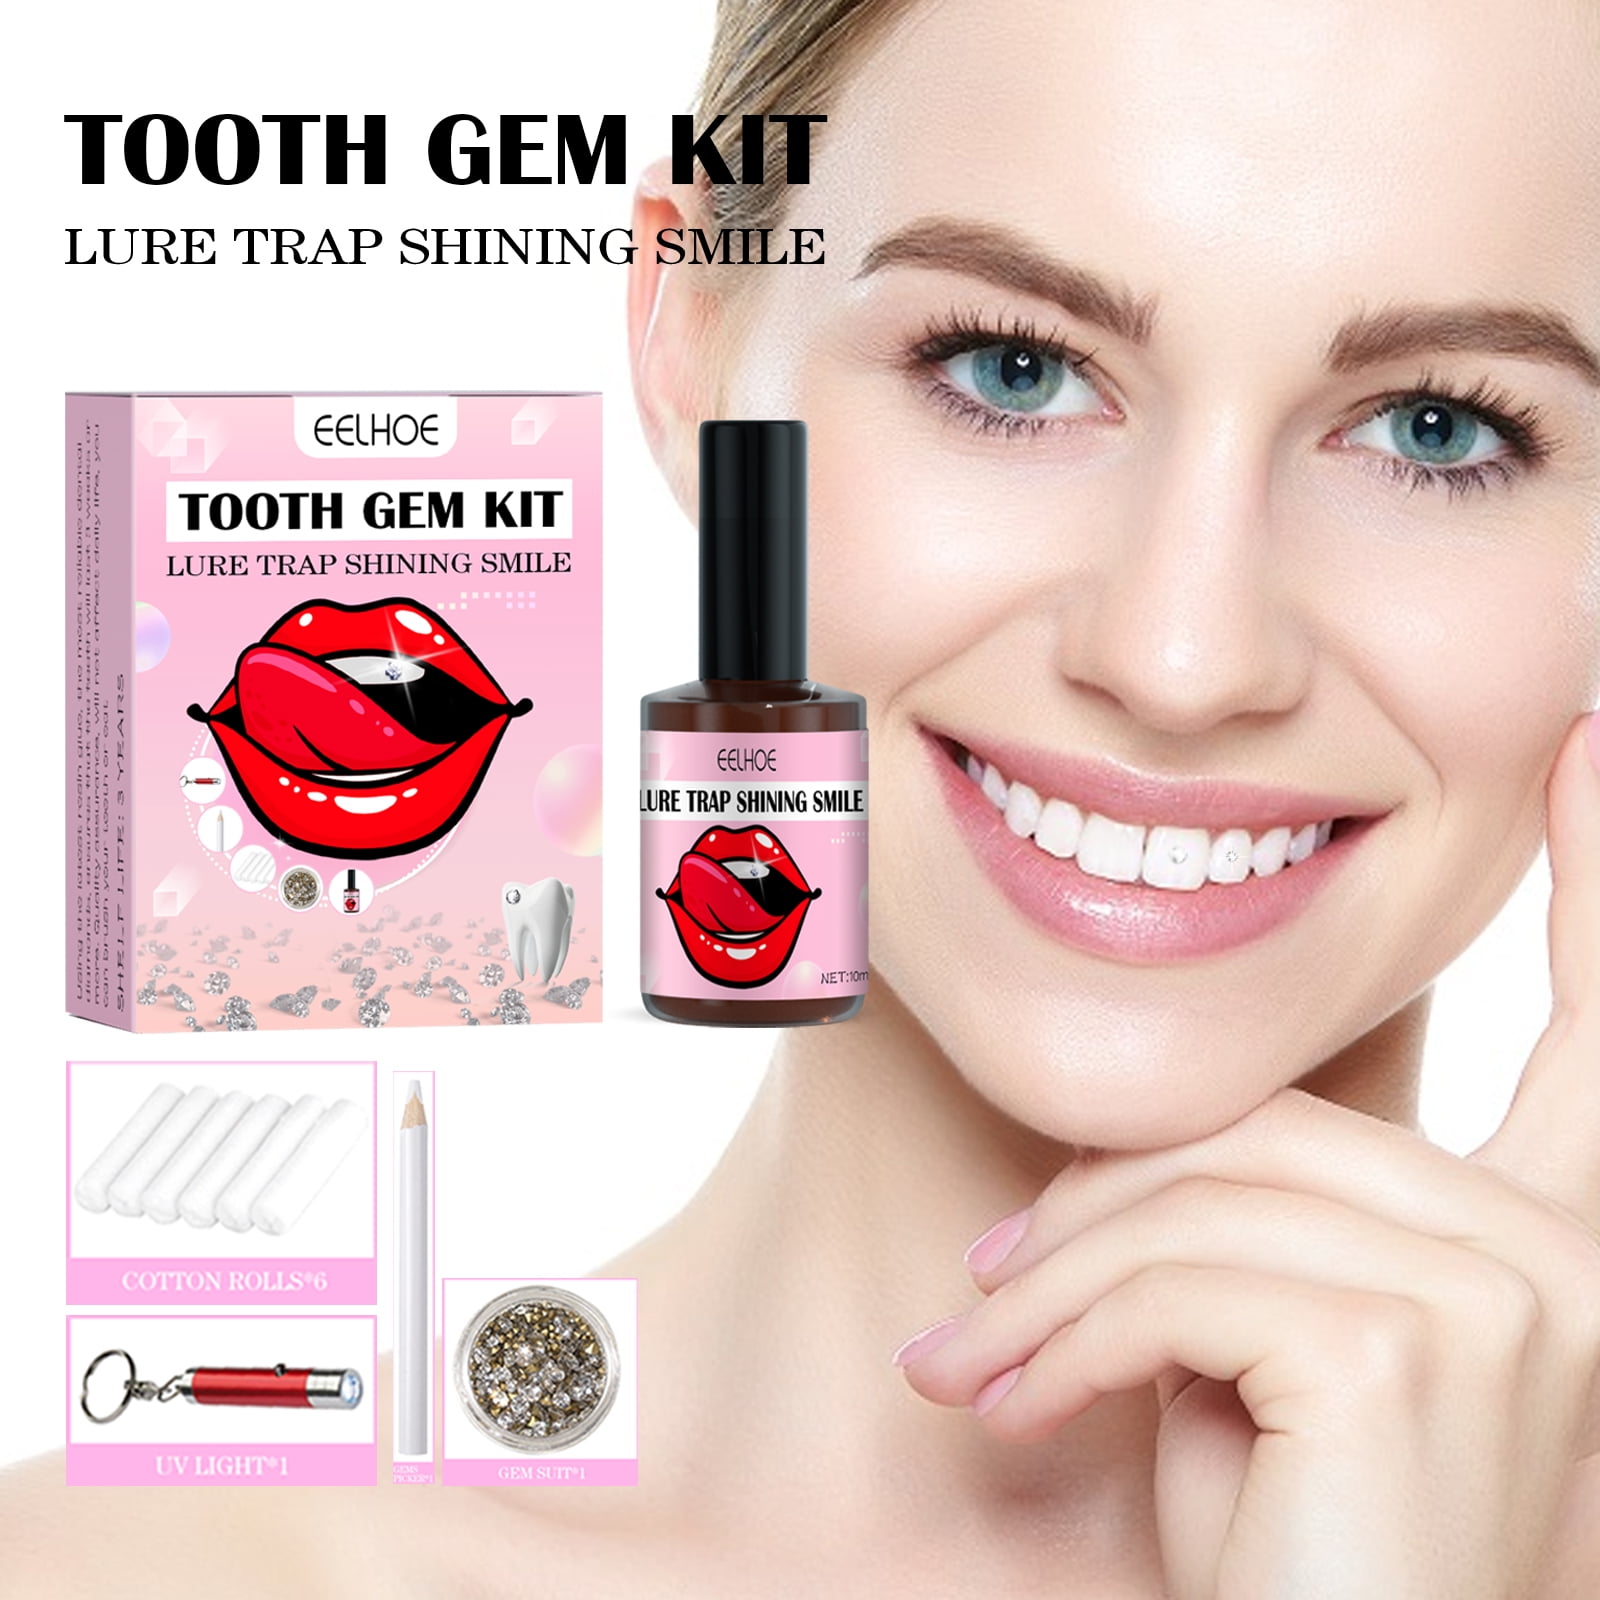  Dental Grade Tooth Gem Kit